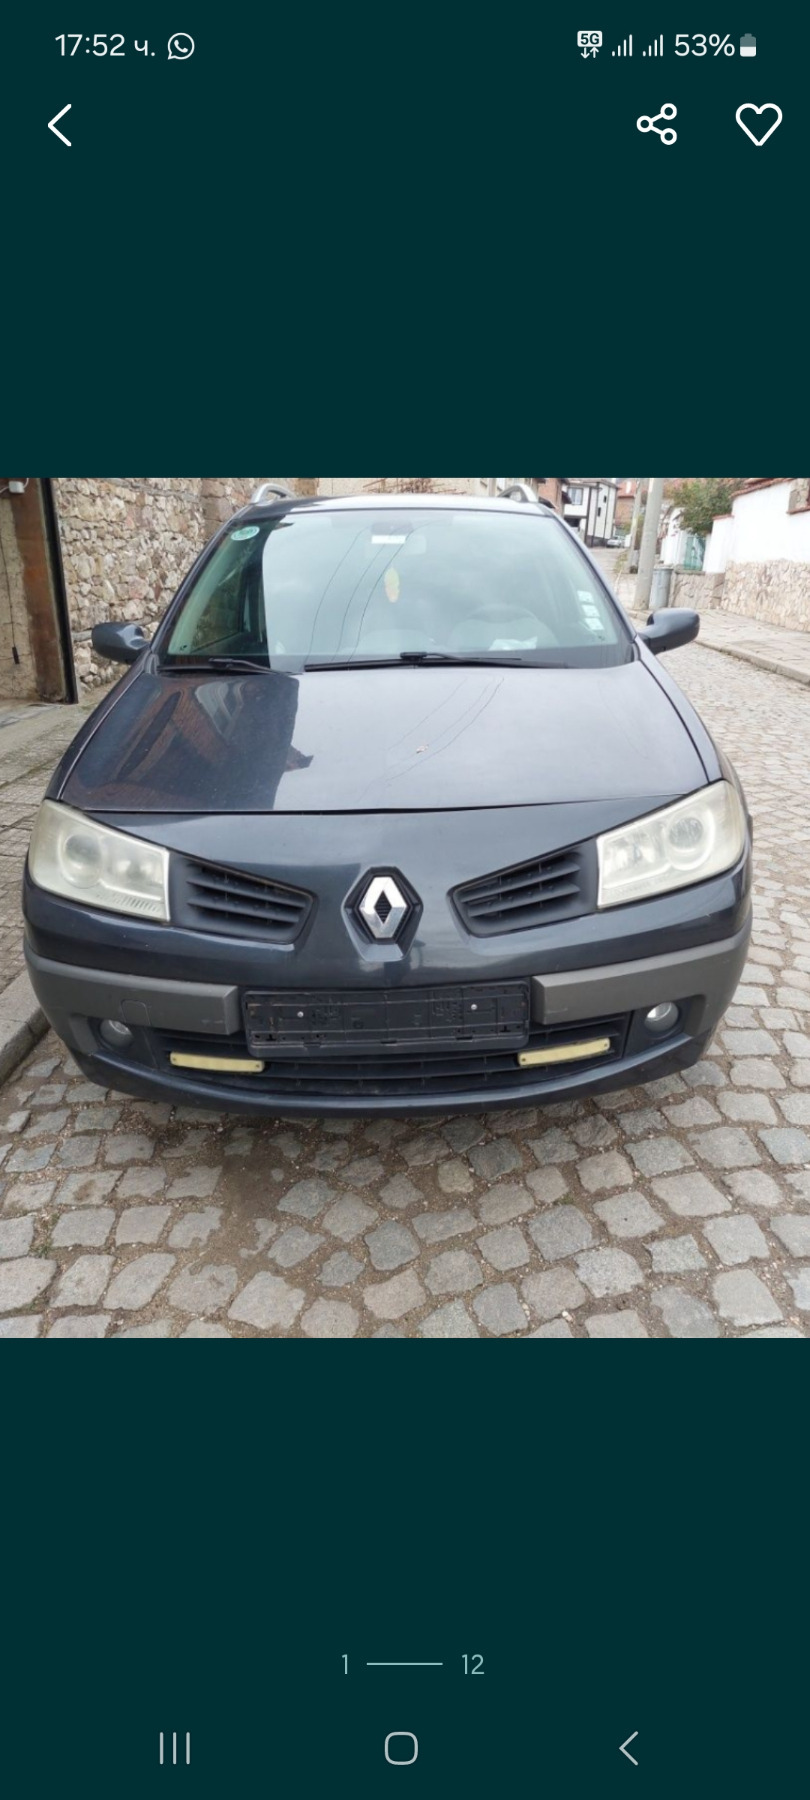 Renault Megane 1.6 16v - изображение 1